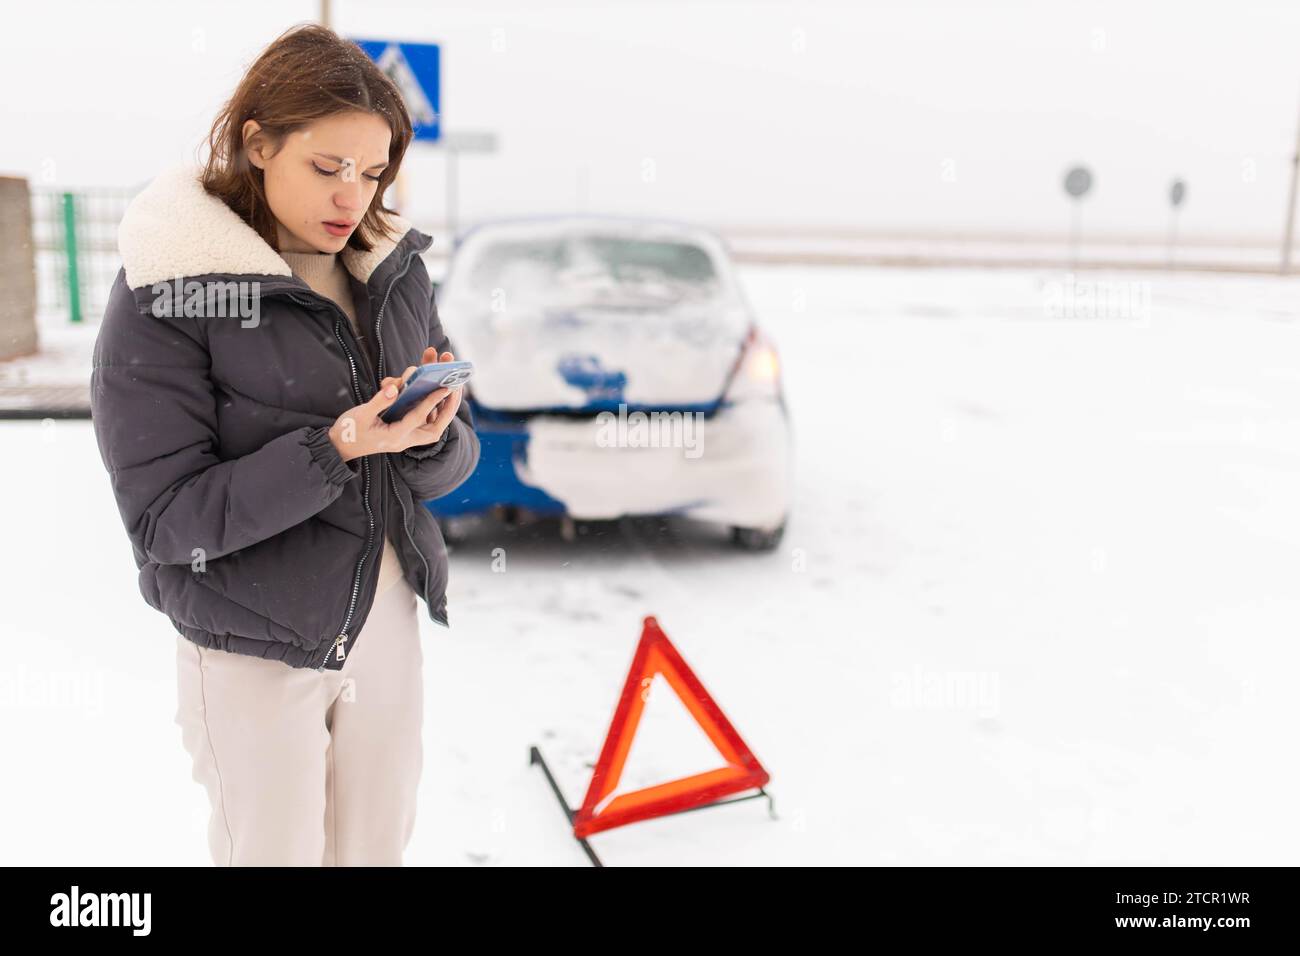 Eine junge Fahrerin, die ihr Auto auf einer rutschigen Winterstraße im Schnee zertrümmert hat, ruft einen Abschleppwagen mit einem Notdreieck neben ihr in der Nähe des Autos an Stockfoto